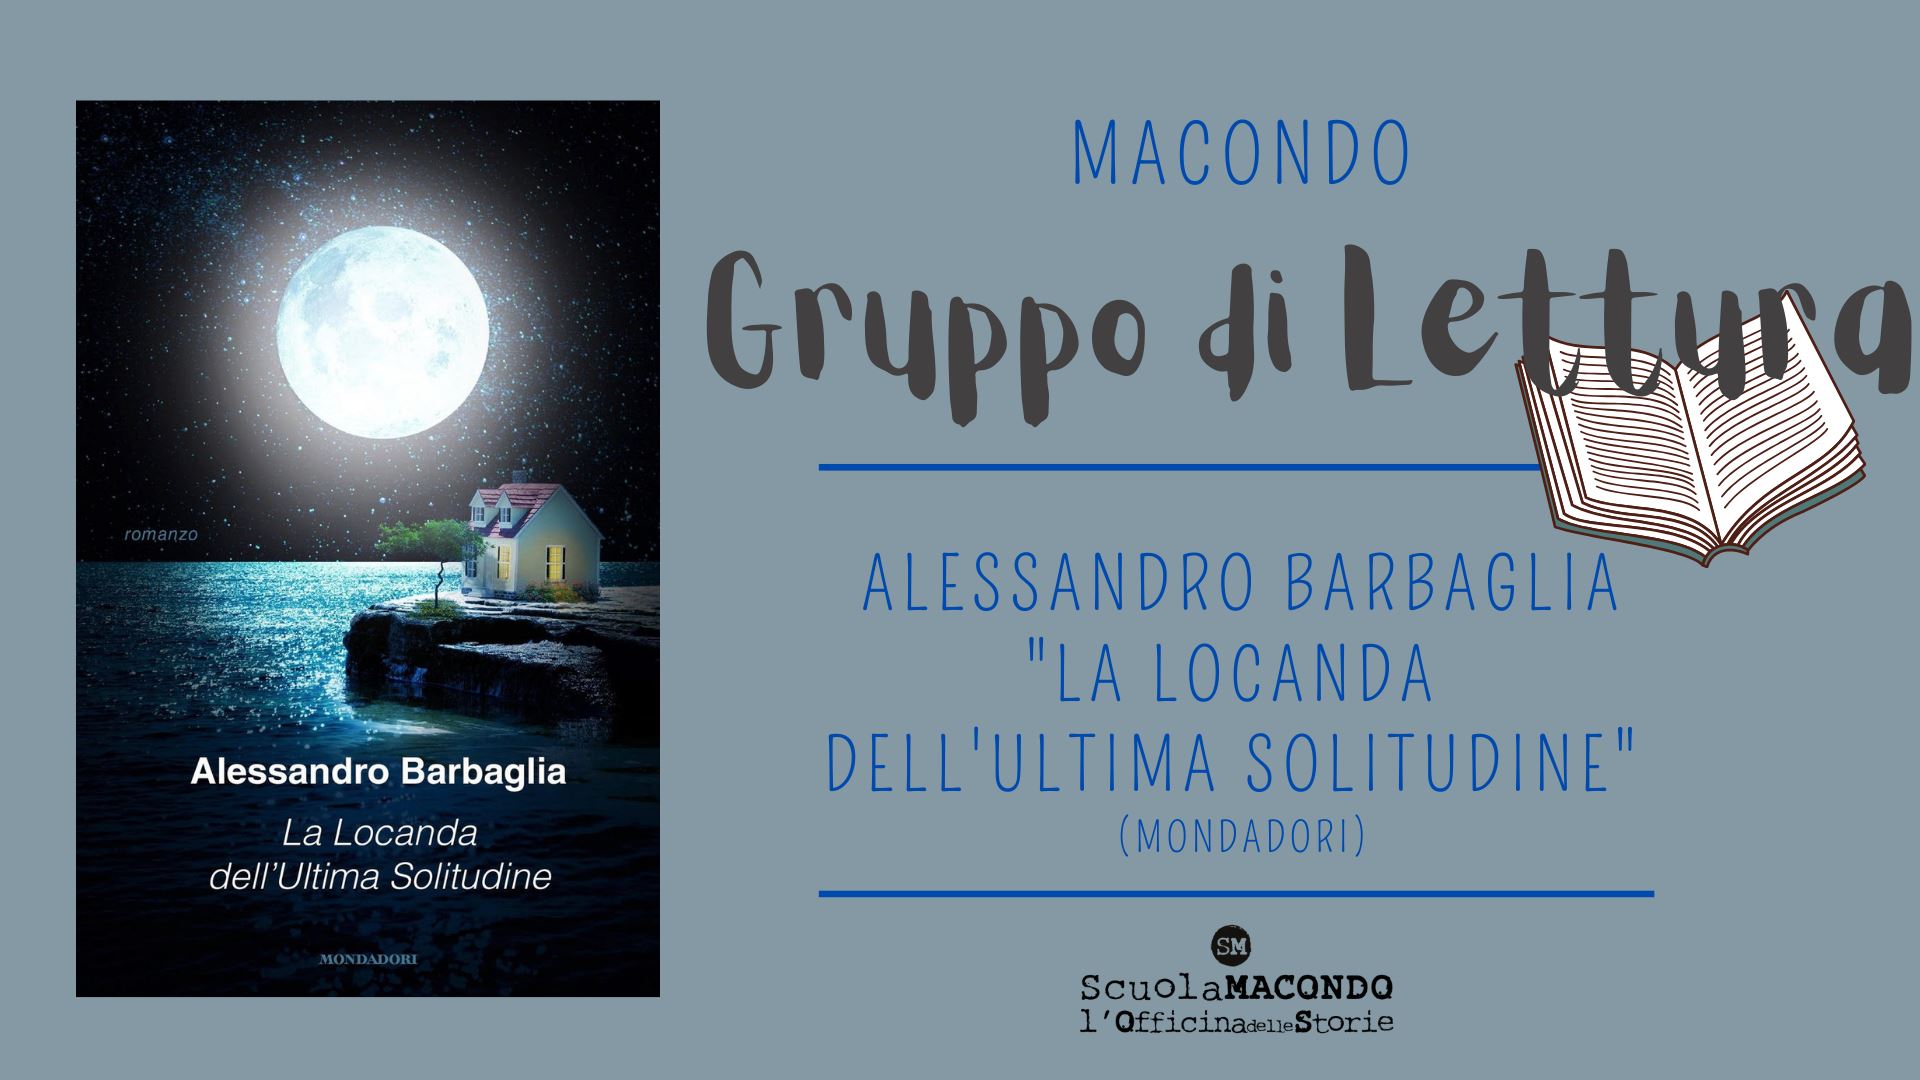 Libri&Editoria. “La locanda dell’ultima solitudine”, Alessandro Barbaglia alla scuola “Macondo” di Pescara